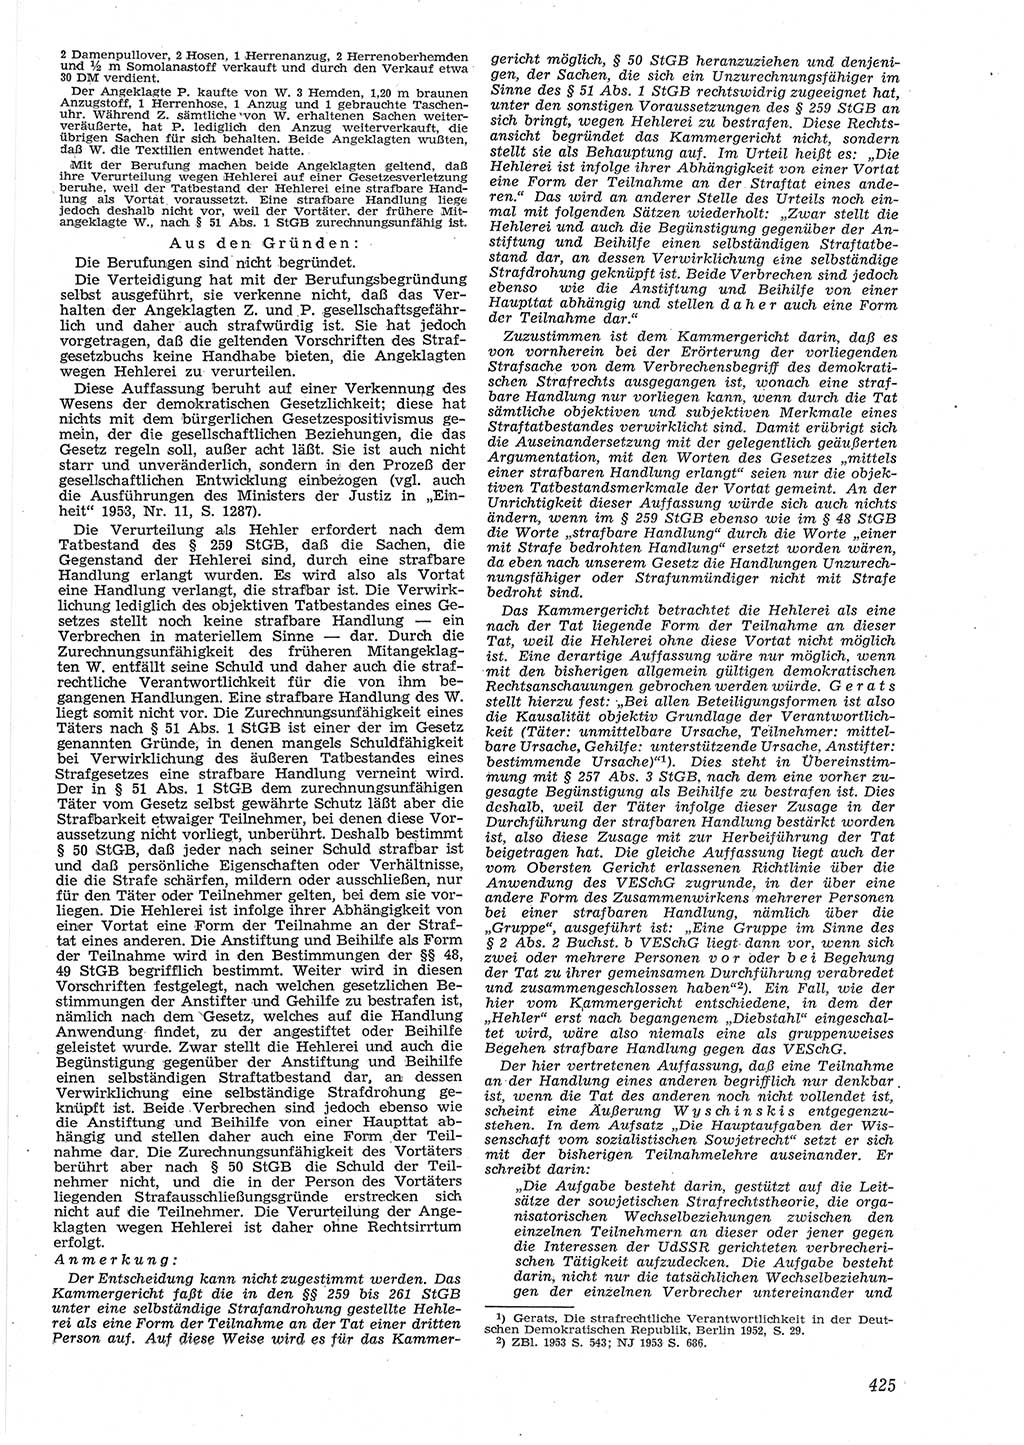 Neue Justiz (NJ), Zeitschrift für Recht und Rechtswissenschaft [Deutsche Demokratische Republik (DDR)], 8. Jahrgang 1954, Seite 425 (NJ DDR 1954, S. 425)